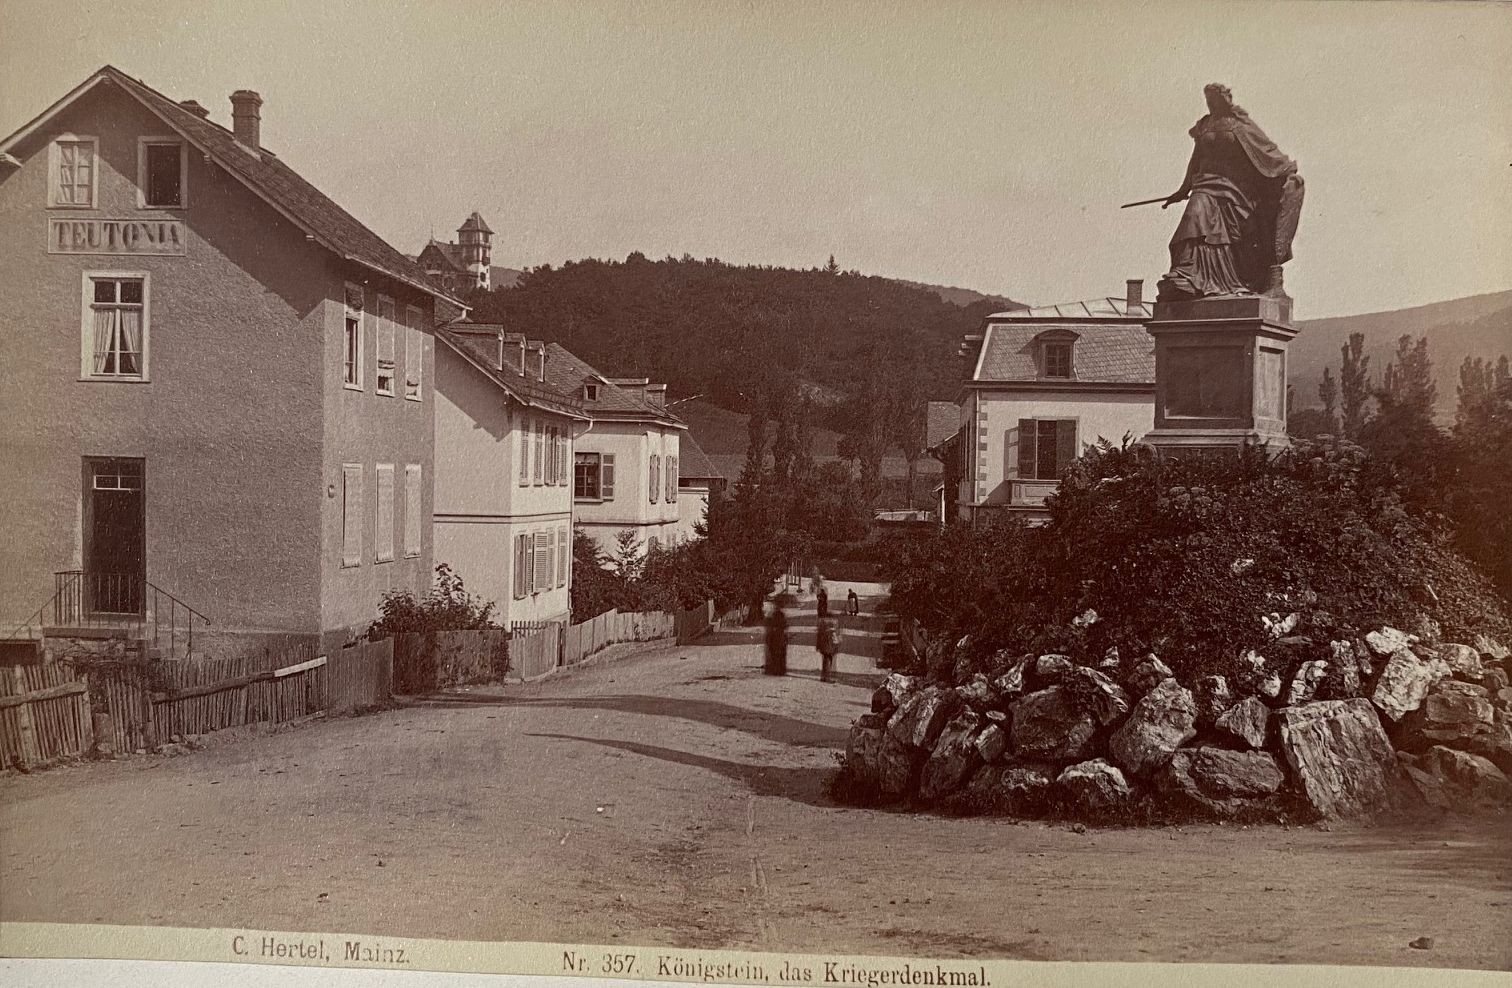 Fotografie, Carl Hertel No. 357, Königstein, das Kriegerdenkmal, ca. 1885 (Taunus-Rhein-Main - Regionalgeschichtliche Sammlung Dr. Stefan Naas CC BY-NC-SA)